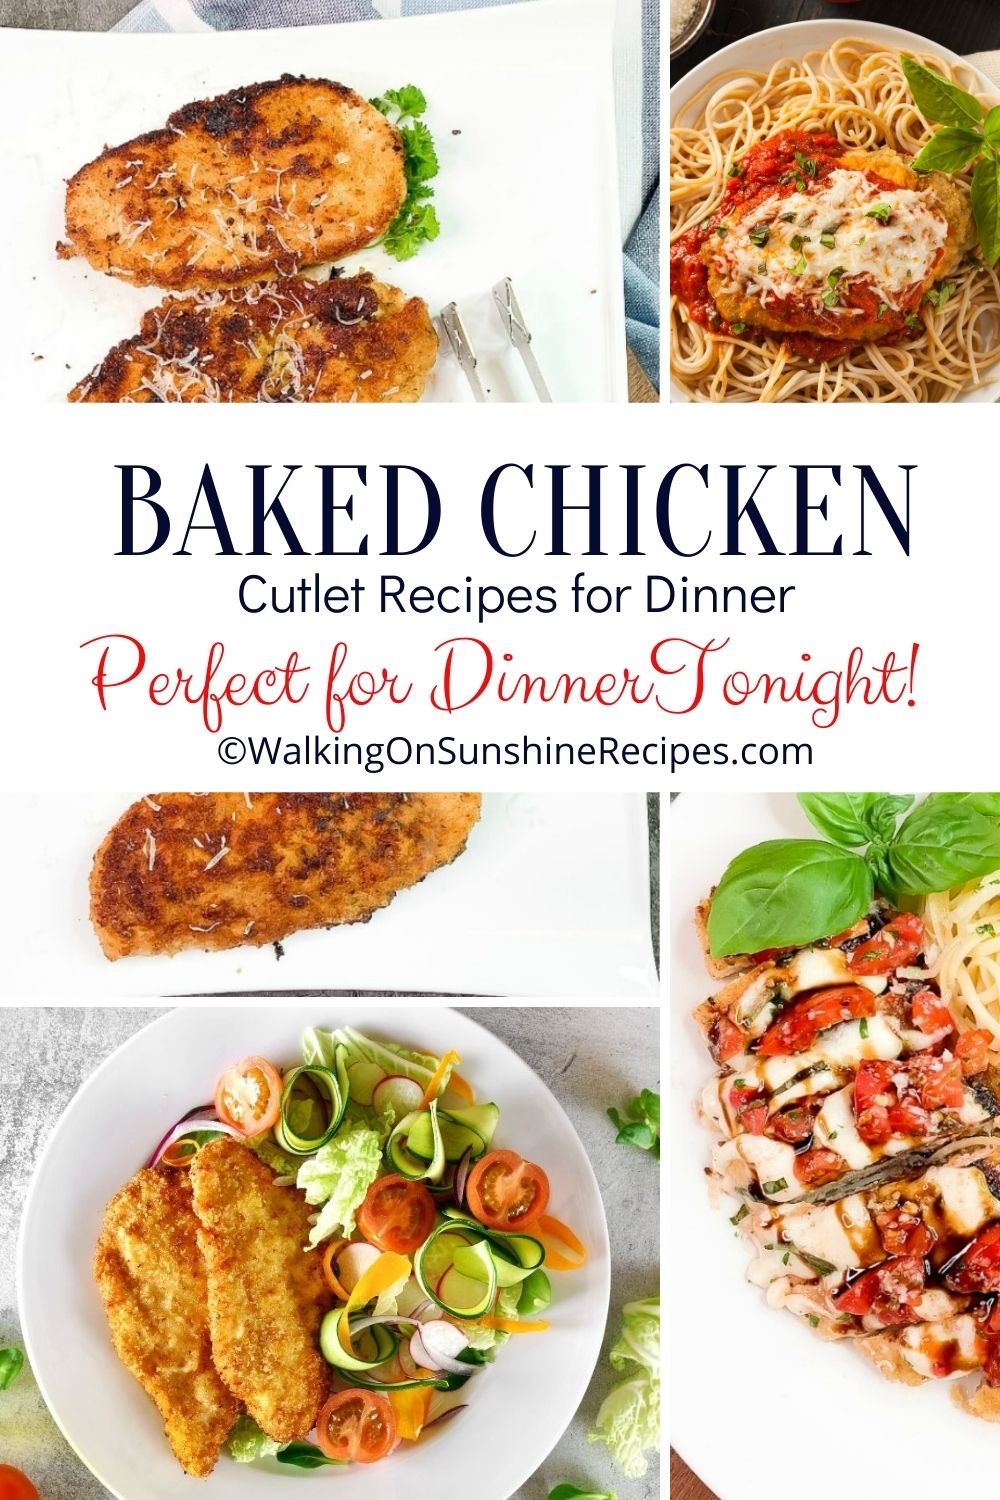 Chicken Cutlet Recipes